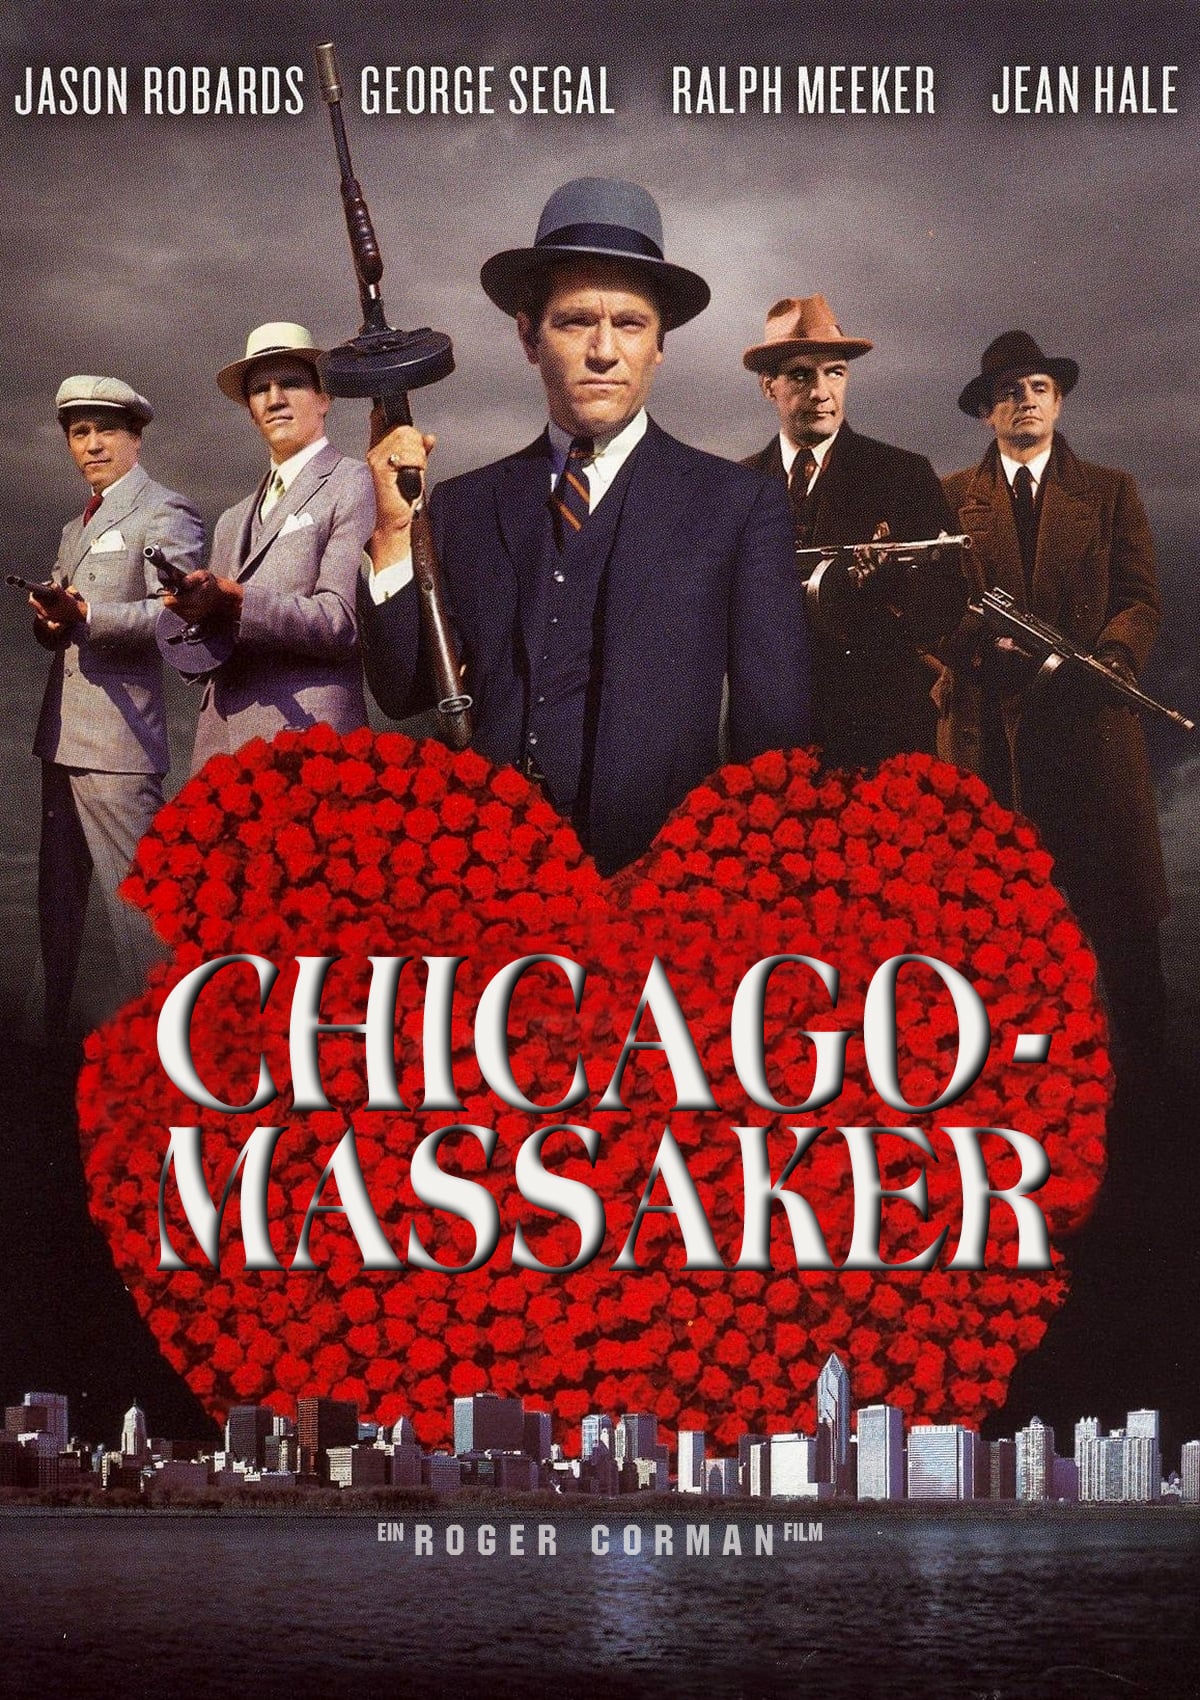 Plakat von "Chicago-Massaker"